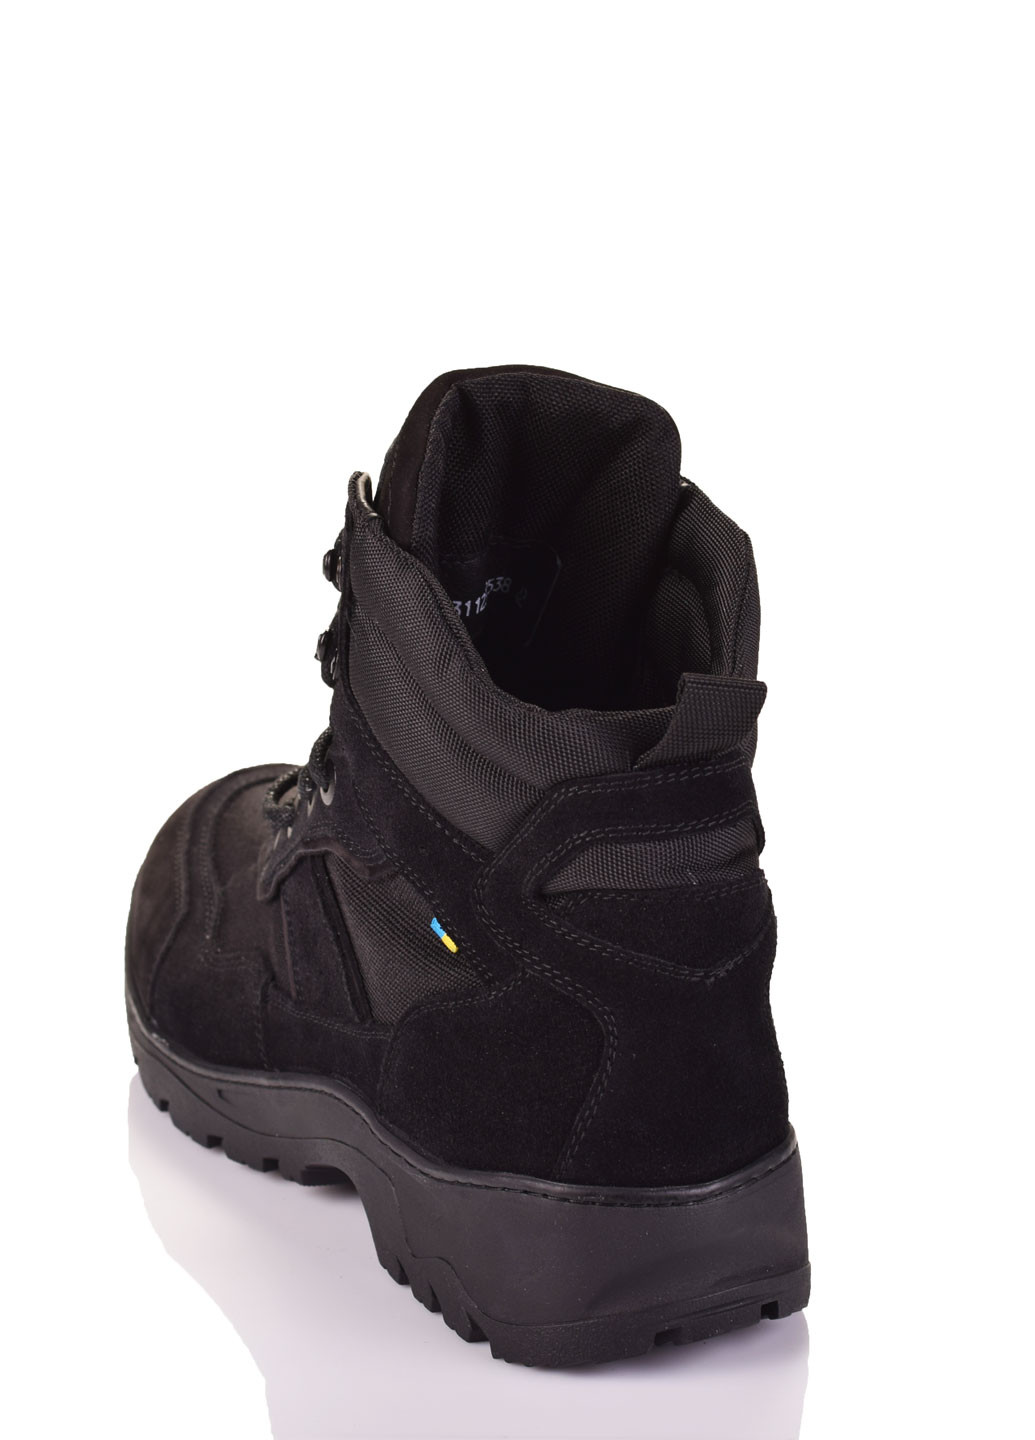 Черные осенние ботинки Marco Piero